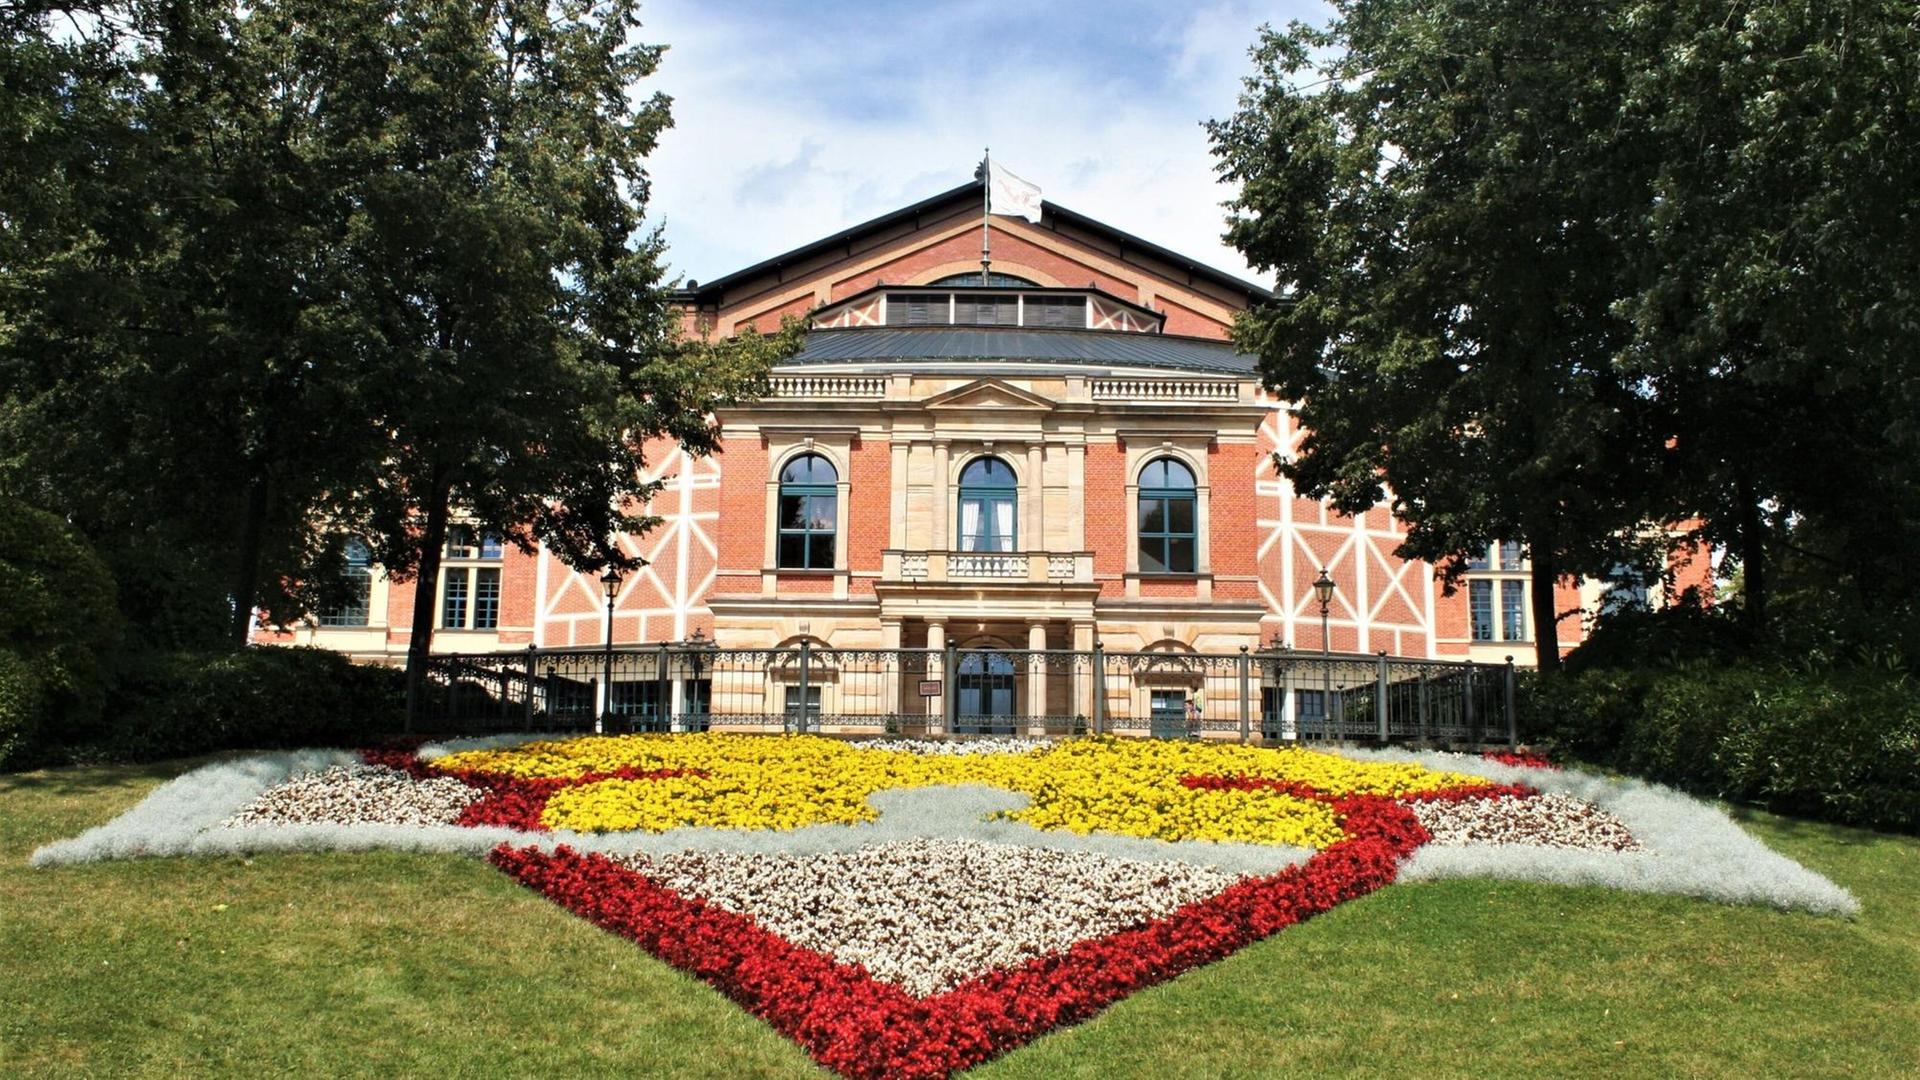 Außenaufnahme des Bayreuther Festspielhauses mit einem großen bunten Blumenbeet im Vordergrund